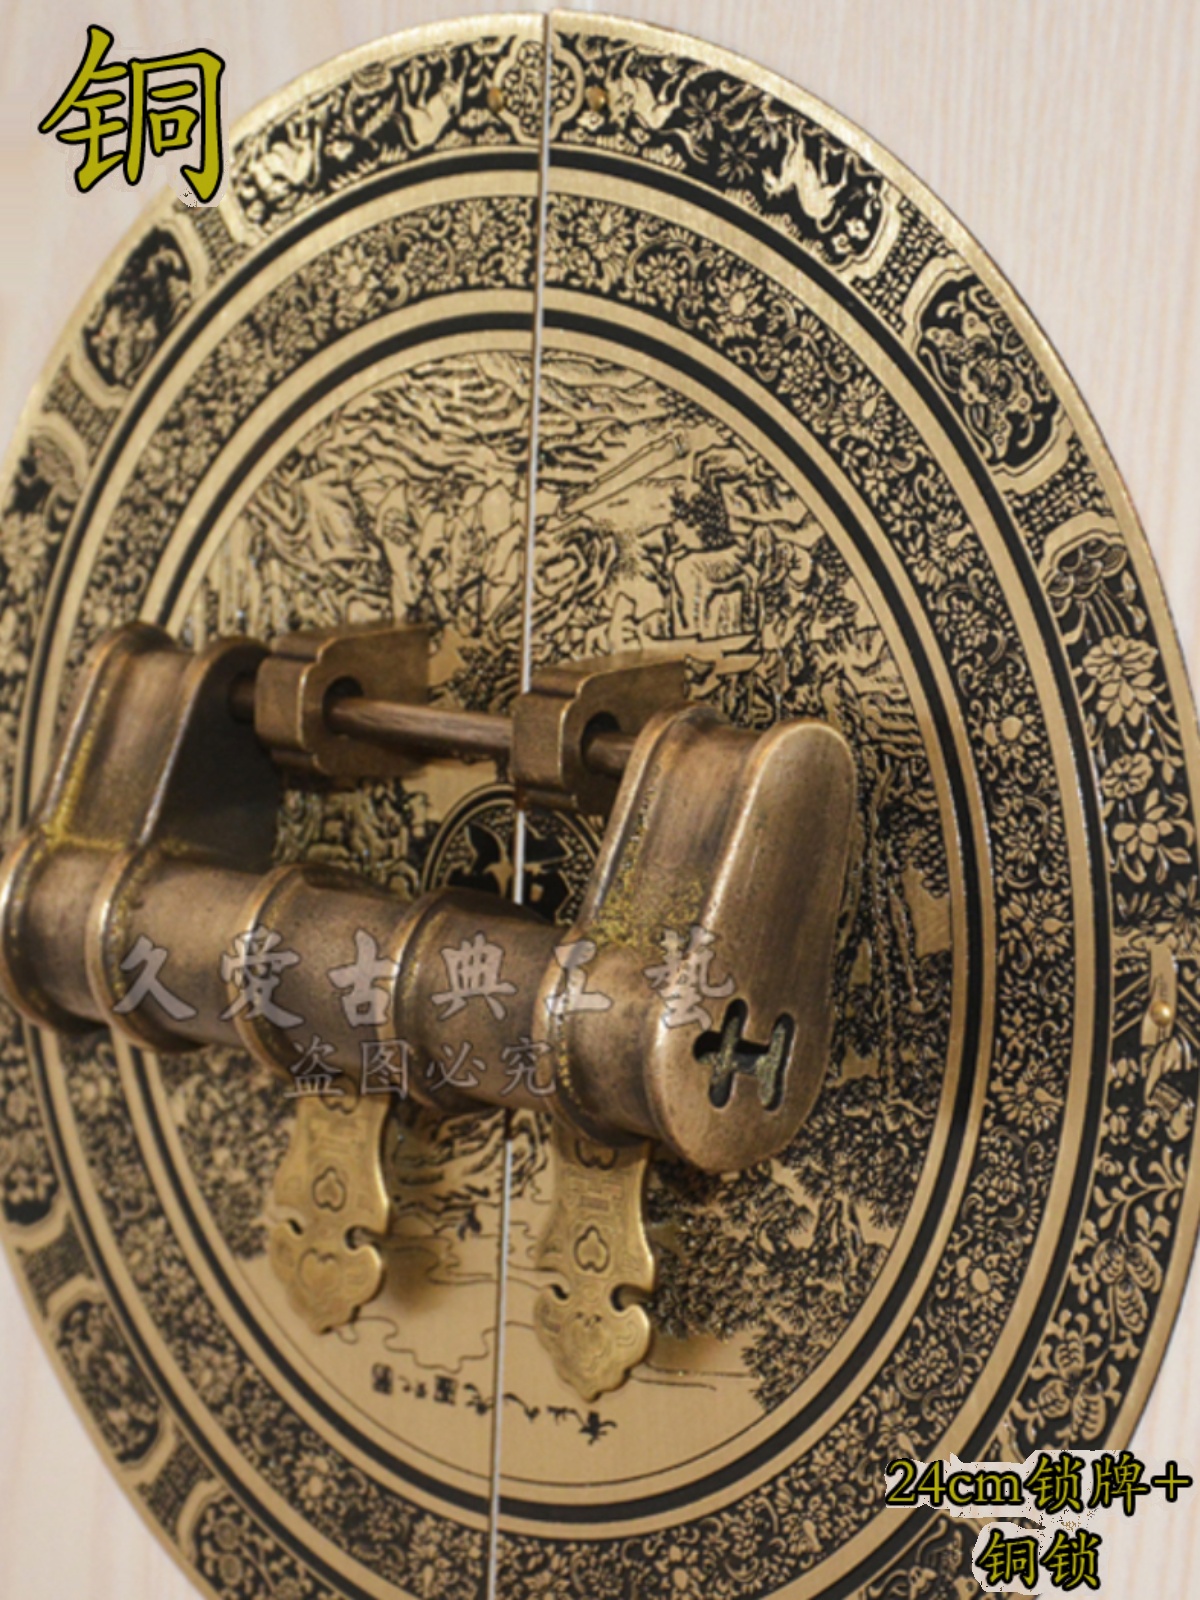 仿古门牌圆形雕刻拉手中式仿古纯铜铜仿古拉手中式铜锁搭柜门锁